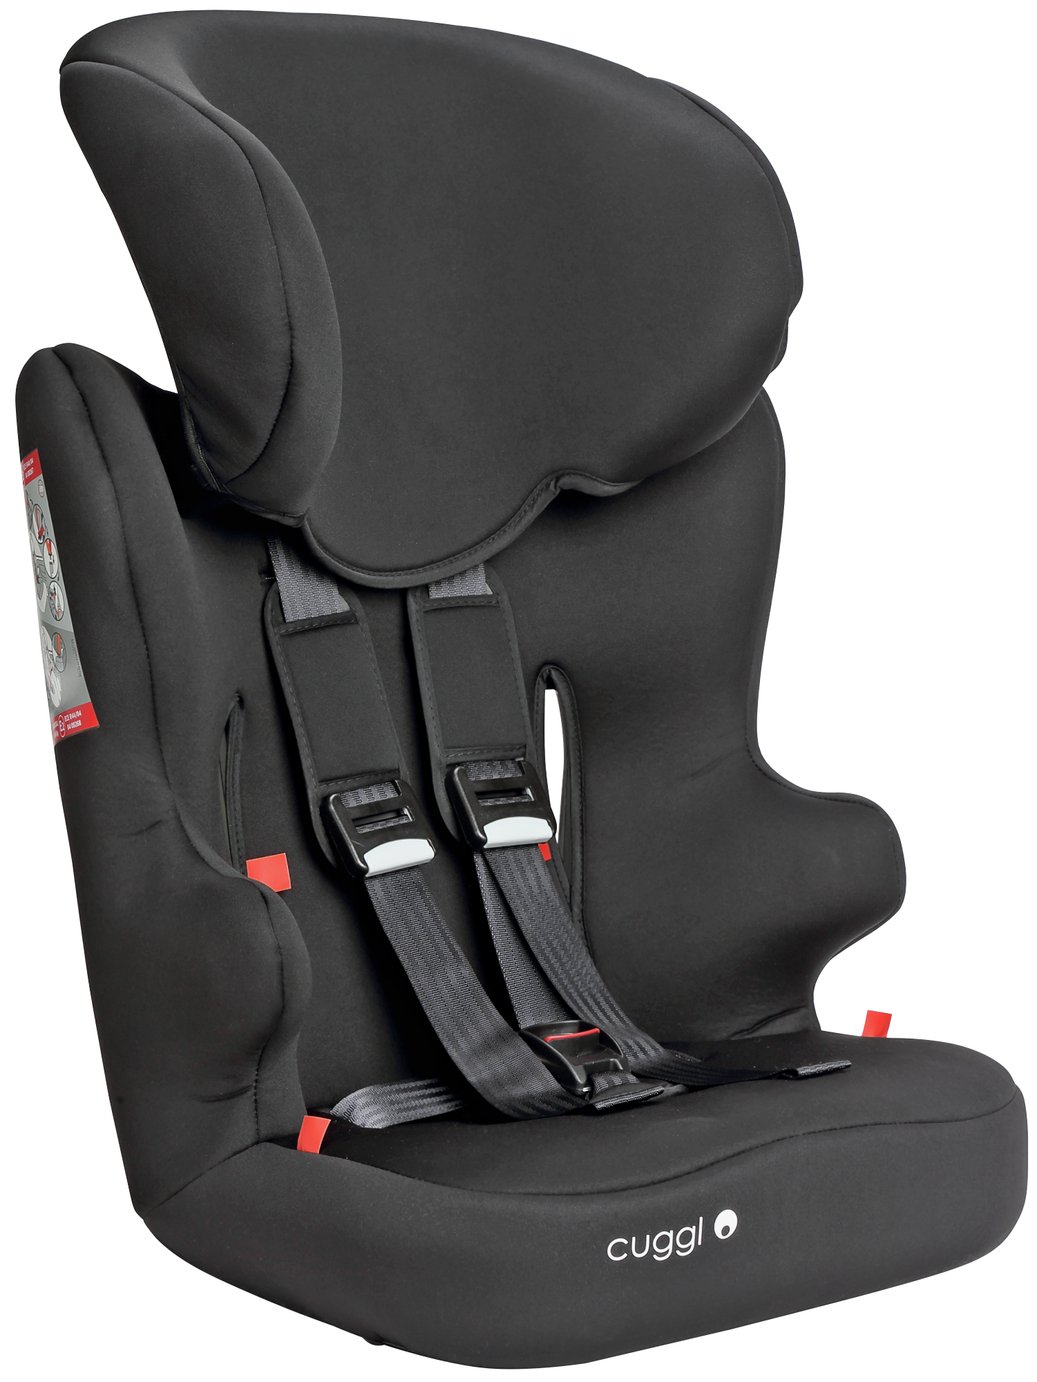 Car seats | Baby \u0026 toddler car seats 